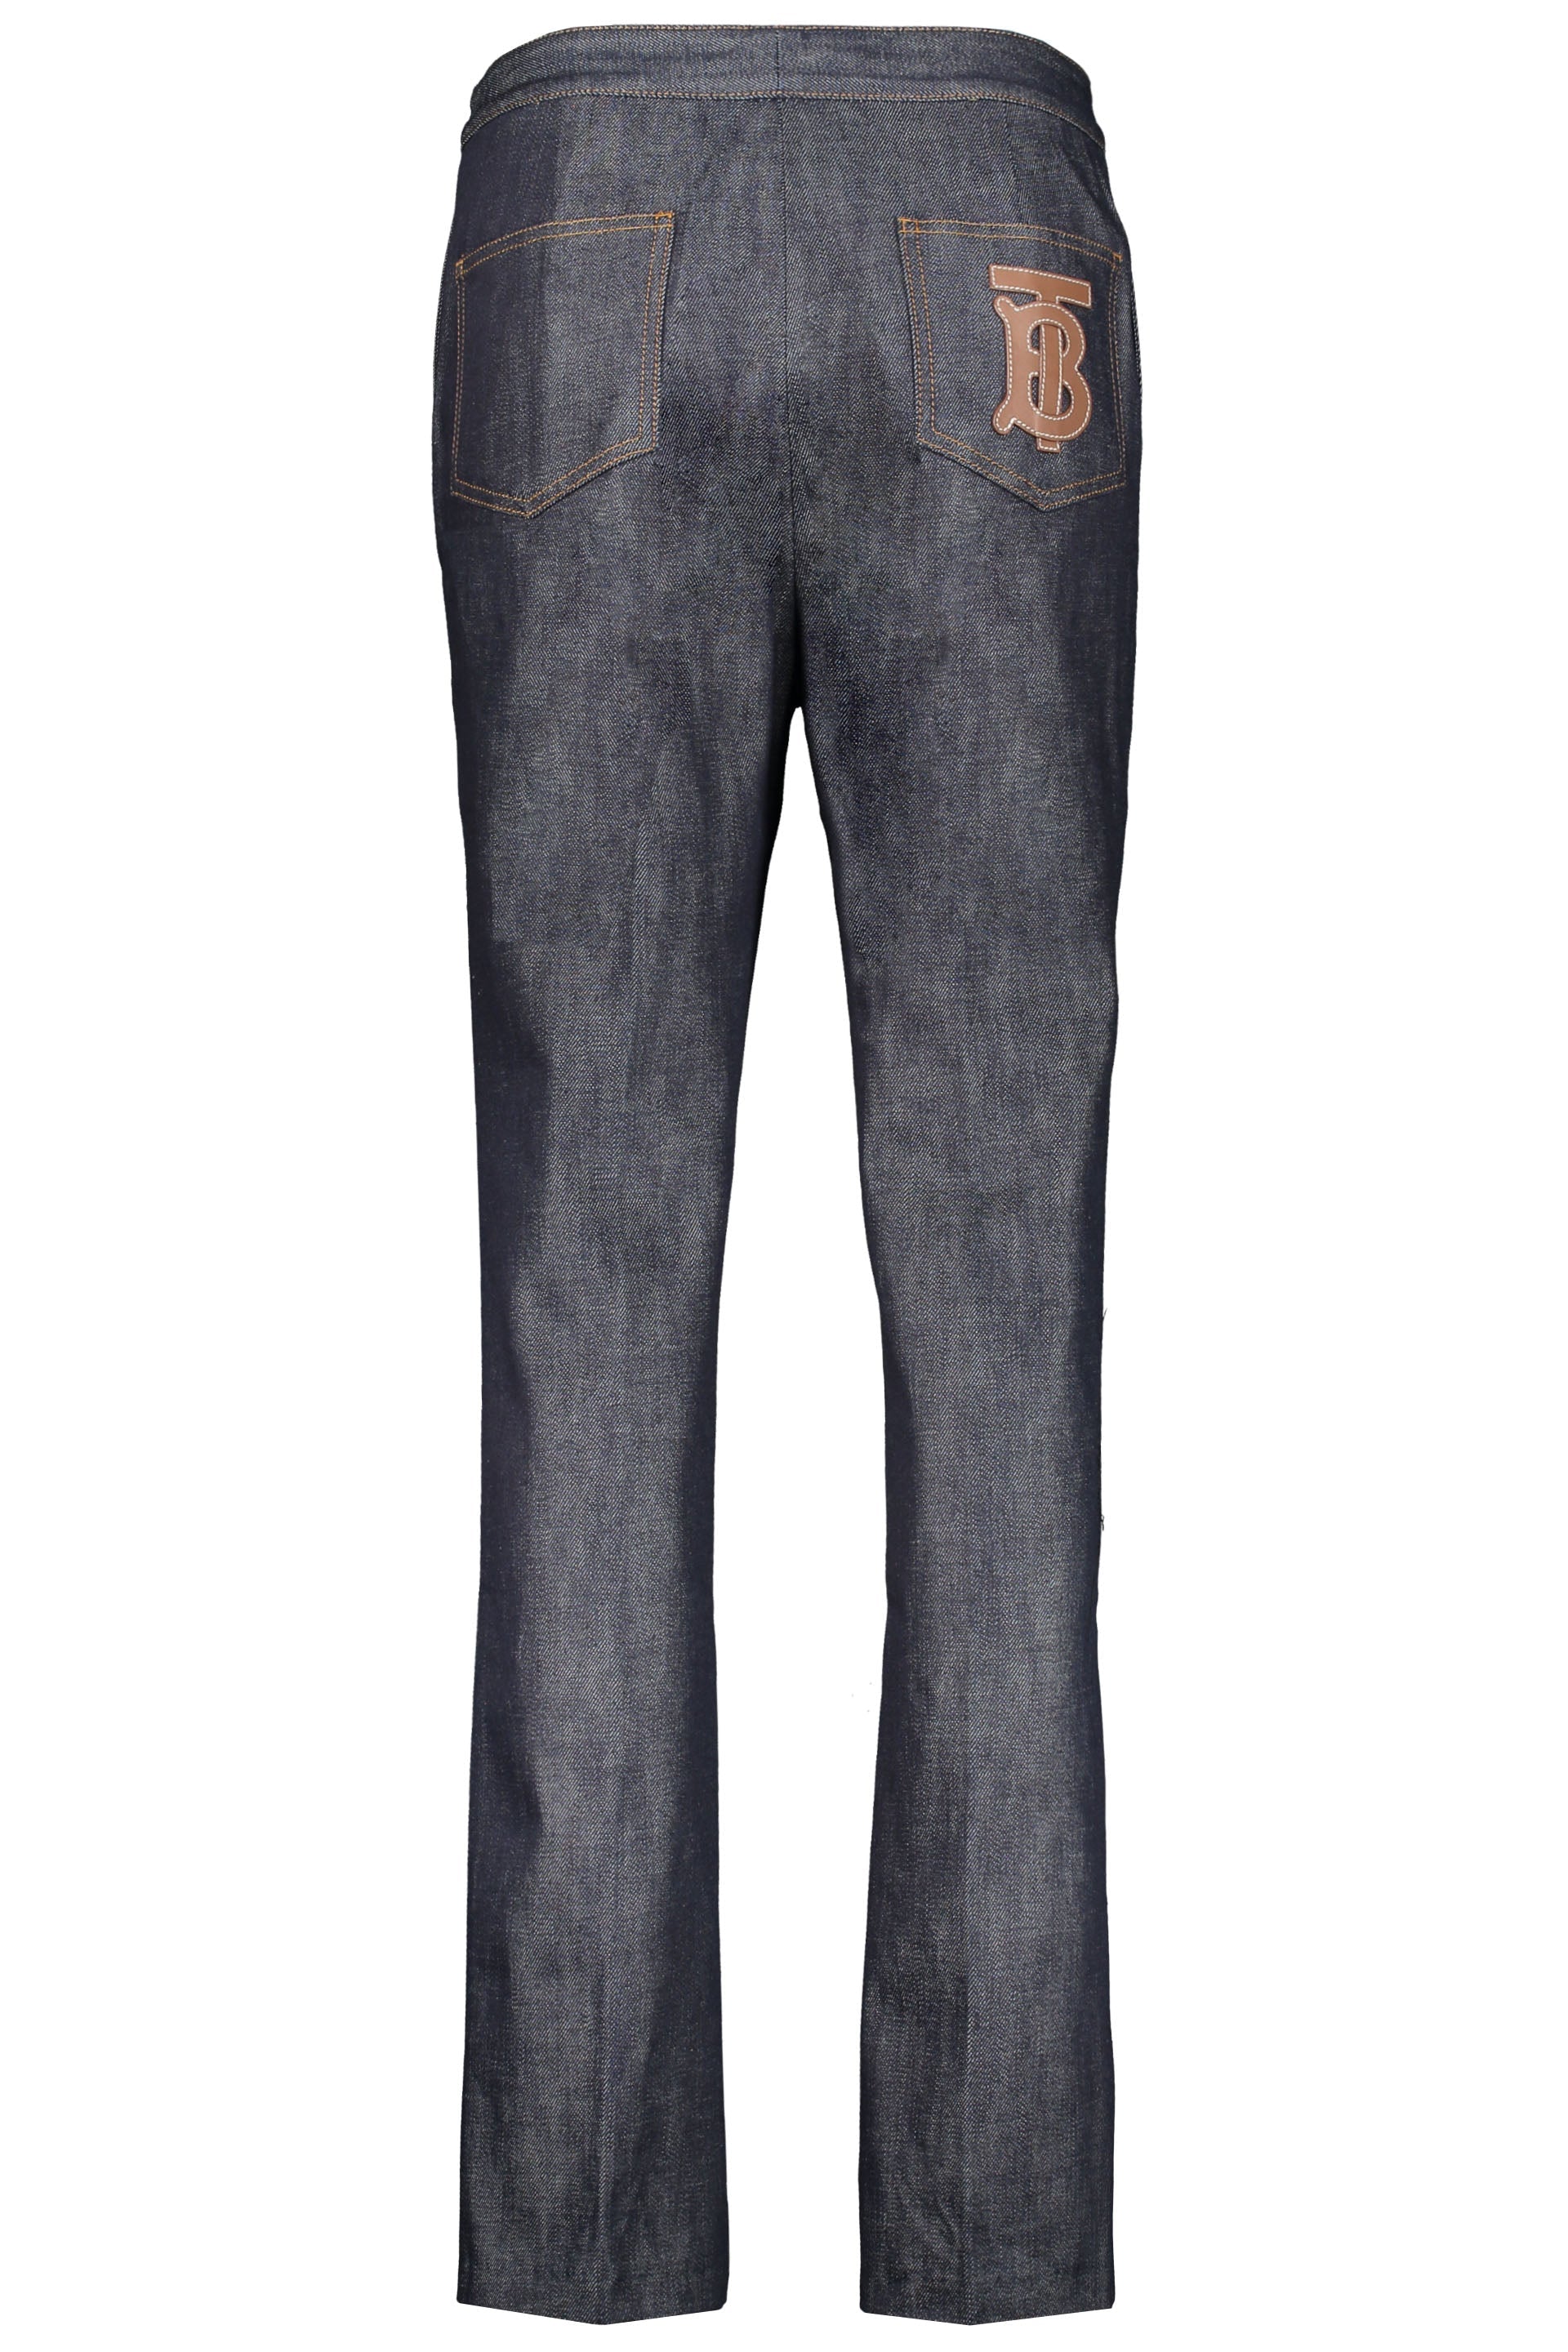 Straight leg jeans-Burberry-OUTLET-SALE-ARCHIVIST